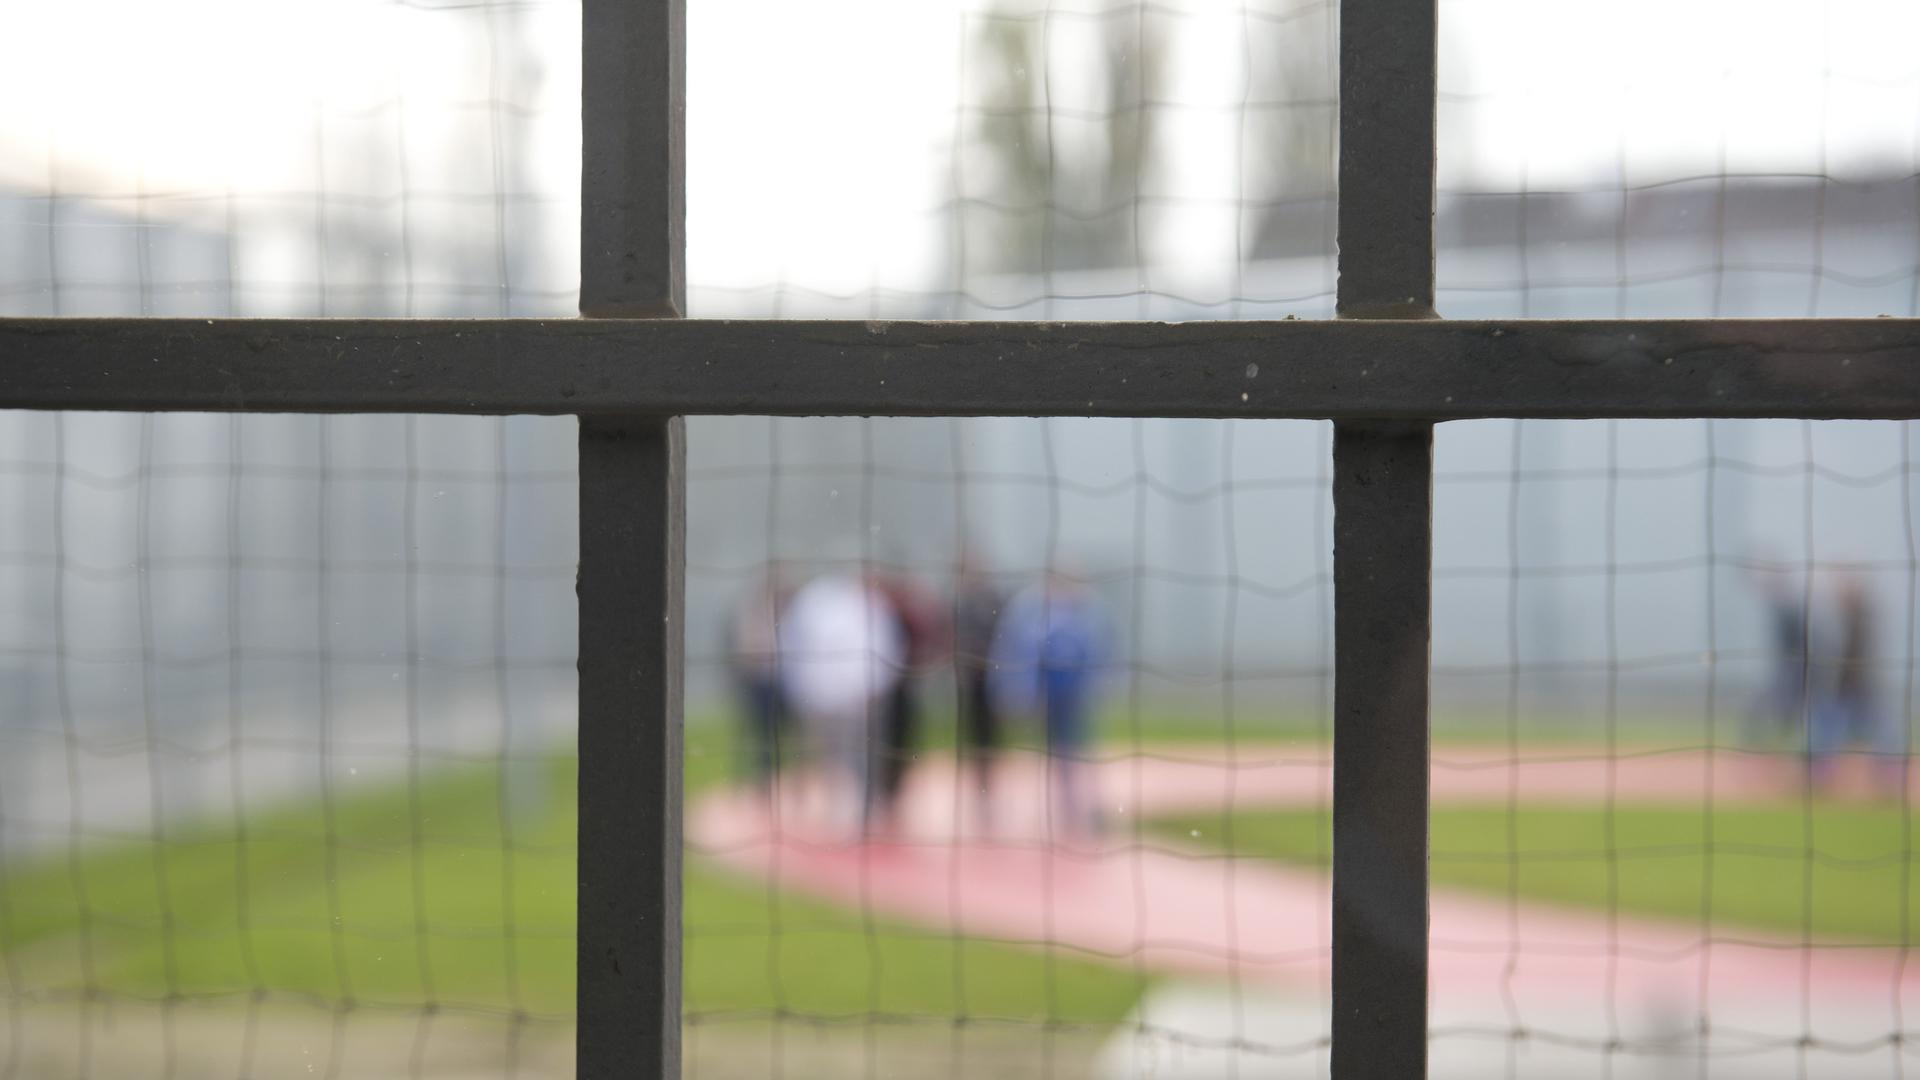 ARCHIV - Hinter einem Gitter laufen am 21.11.2014 Gefängnisinsassen der Justizvollzugsanstalt in Stuttgart (Baden-Württemberg) über einen Gefängnishof. Foto: Daniel Naupold/dpa (zu dpa "Gefängnisse als Brutstätte des Islamismus?" vom 01.03.2015) +++ dpa-Bildfunk +++